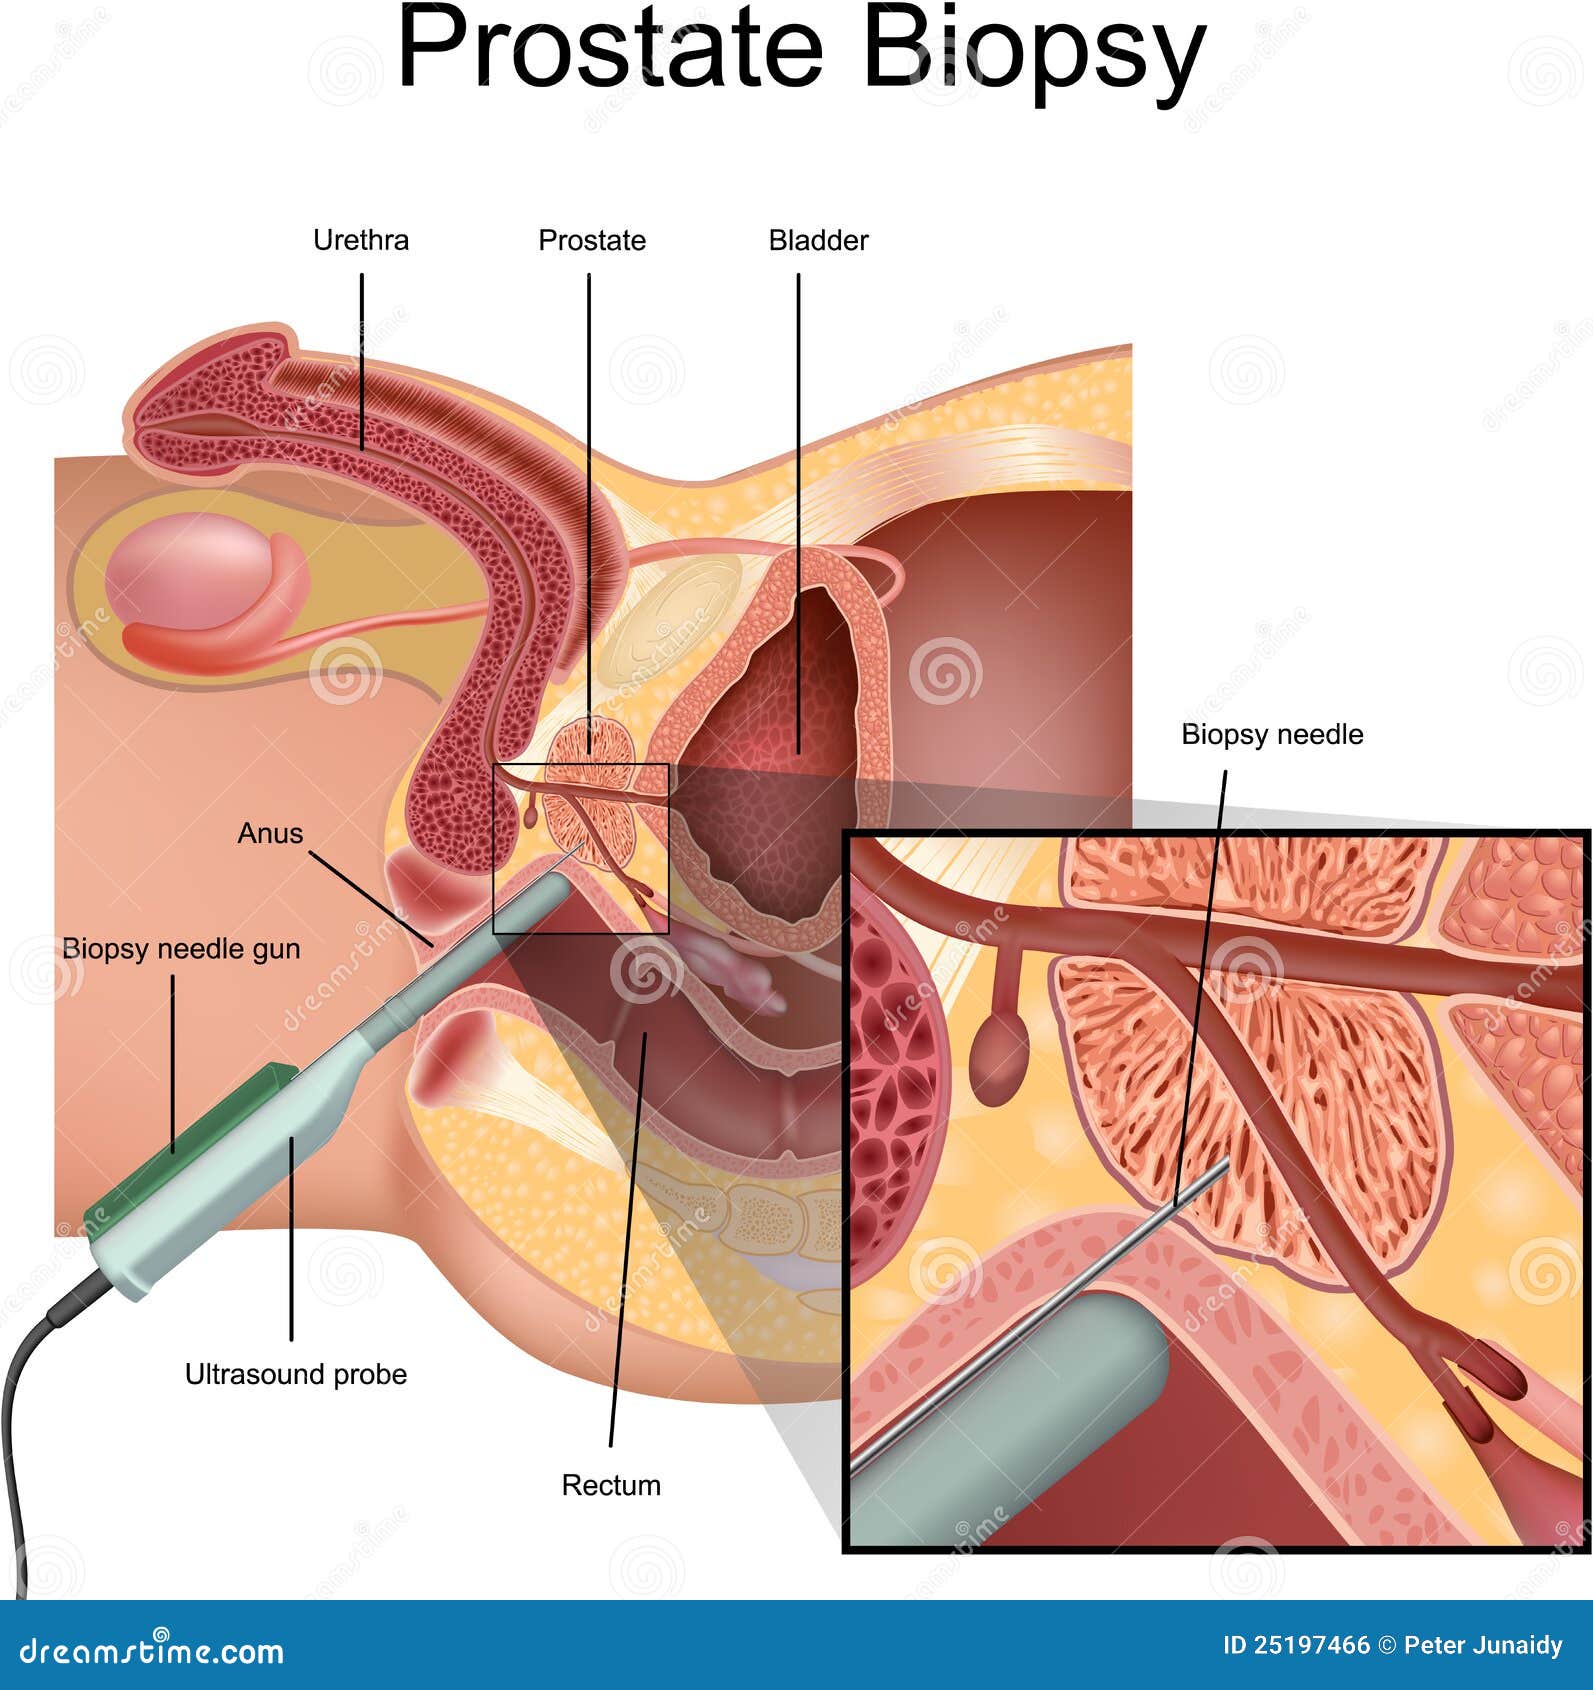 la prostata influisce sullerezione)